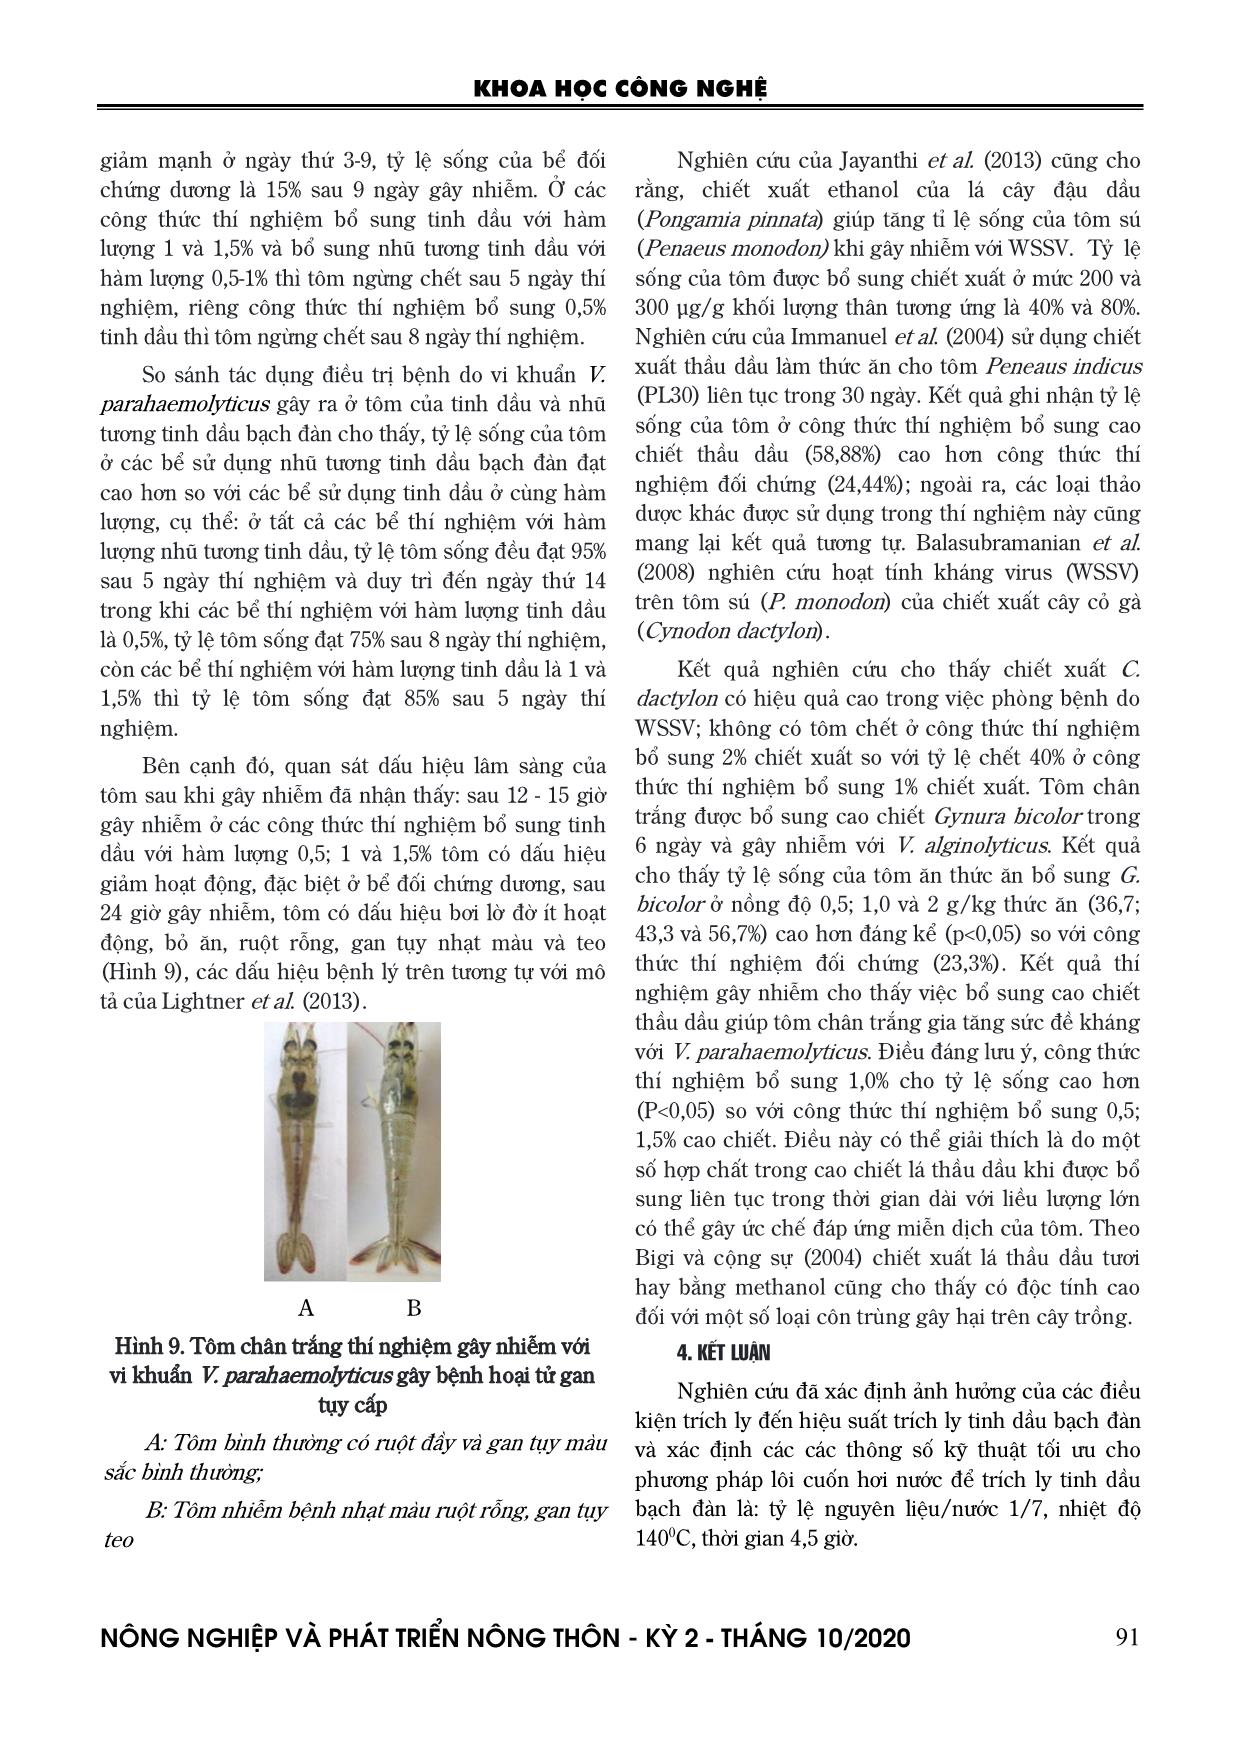 Nghiên cứu tạo chế phẩm nhũ tương từ hợp chất kháng khuẩn của cây bạch đàn trắng (Eucalyptus camaldulensis Dahnardt) phục vụ phòng bệnh hoại tử gan tụy ở tôm chân trắng trang 7